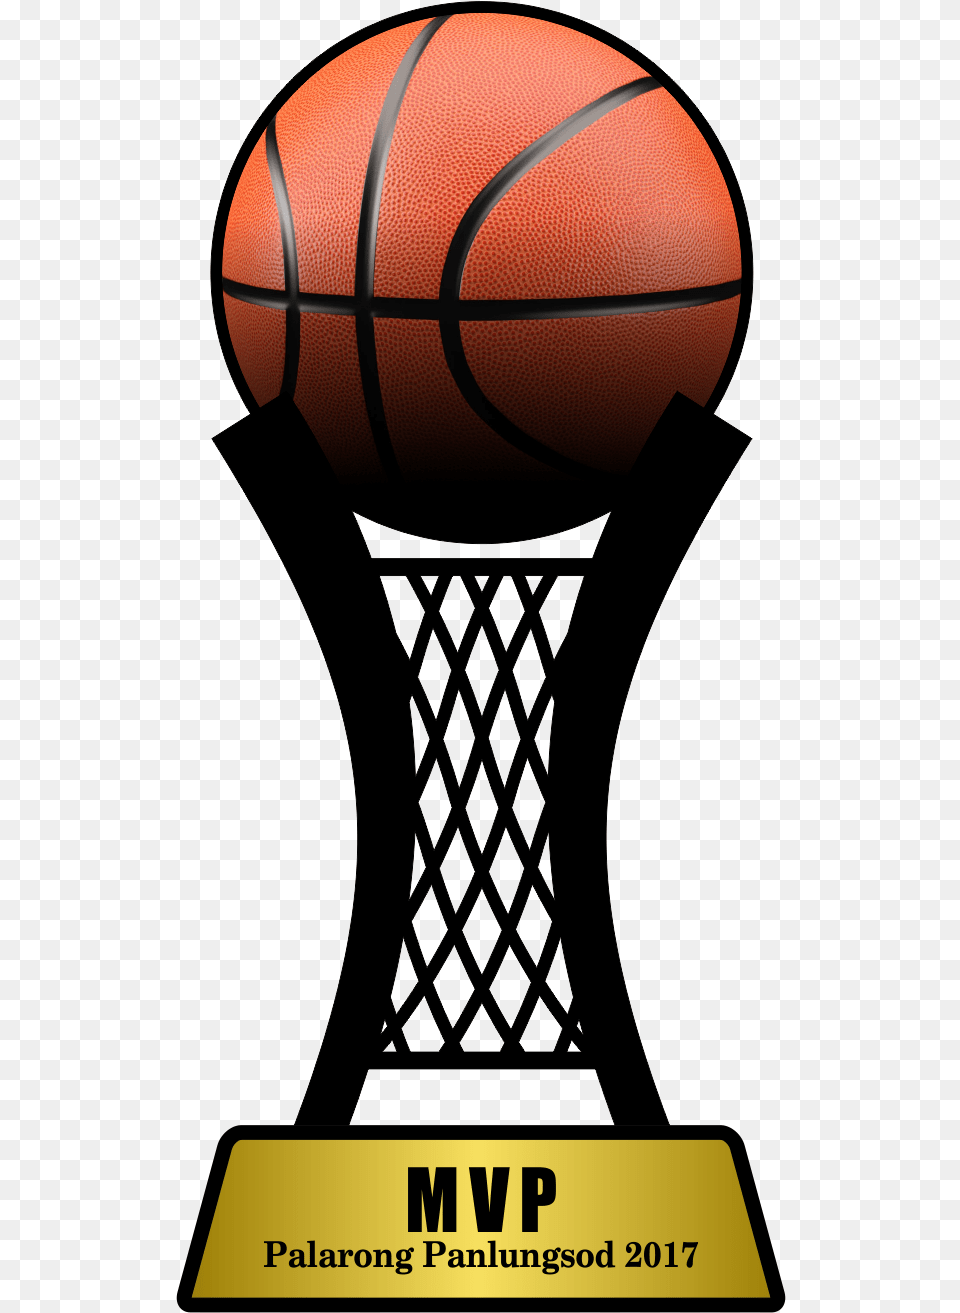 Shoot Basketball, Ball, Basketball (ball), Sport Free Transparent Png